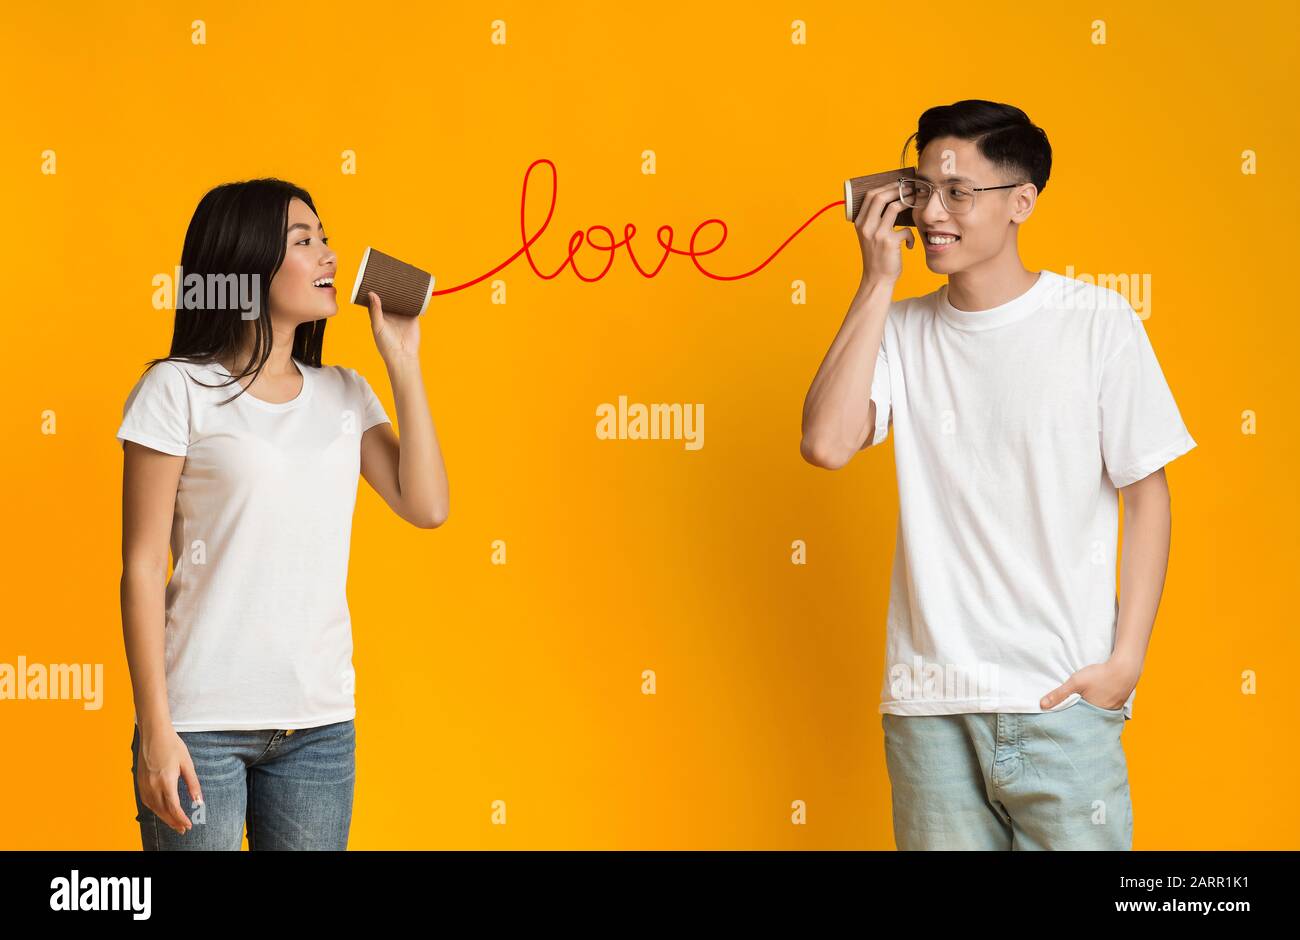 Asiatische Mädchen, die Liebeserklärung über Zinn abgeben, können anrufen Stockfoto